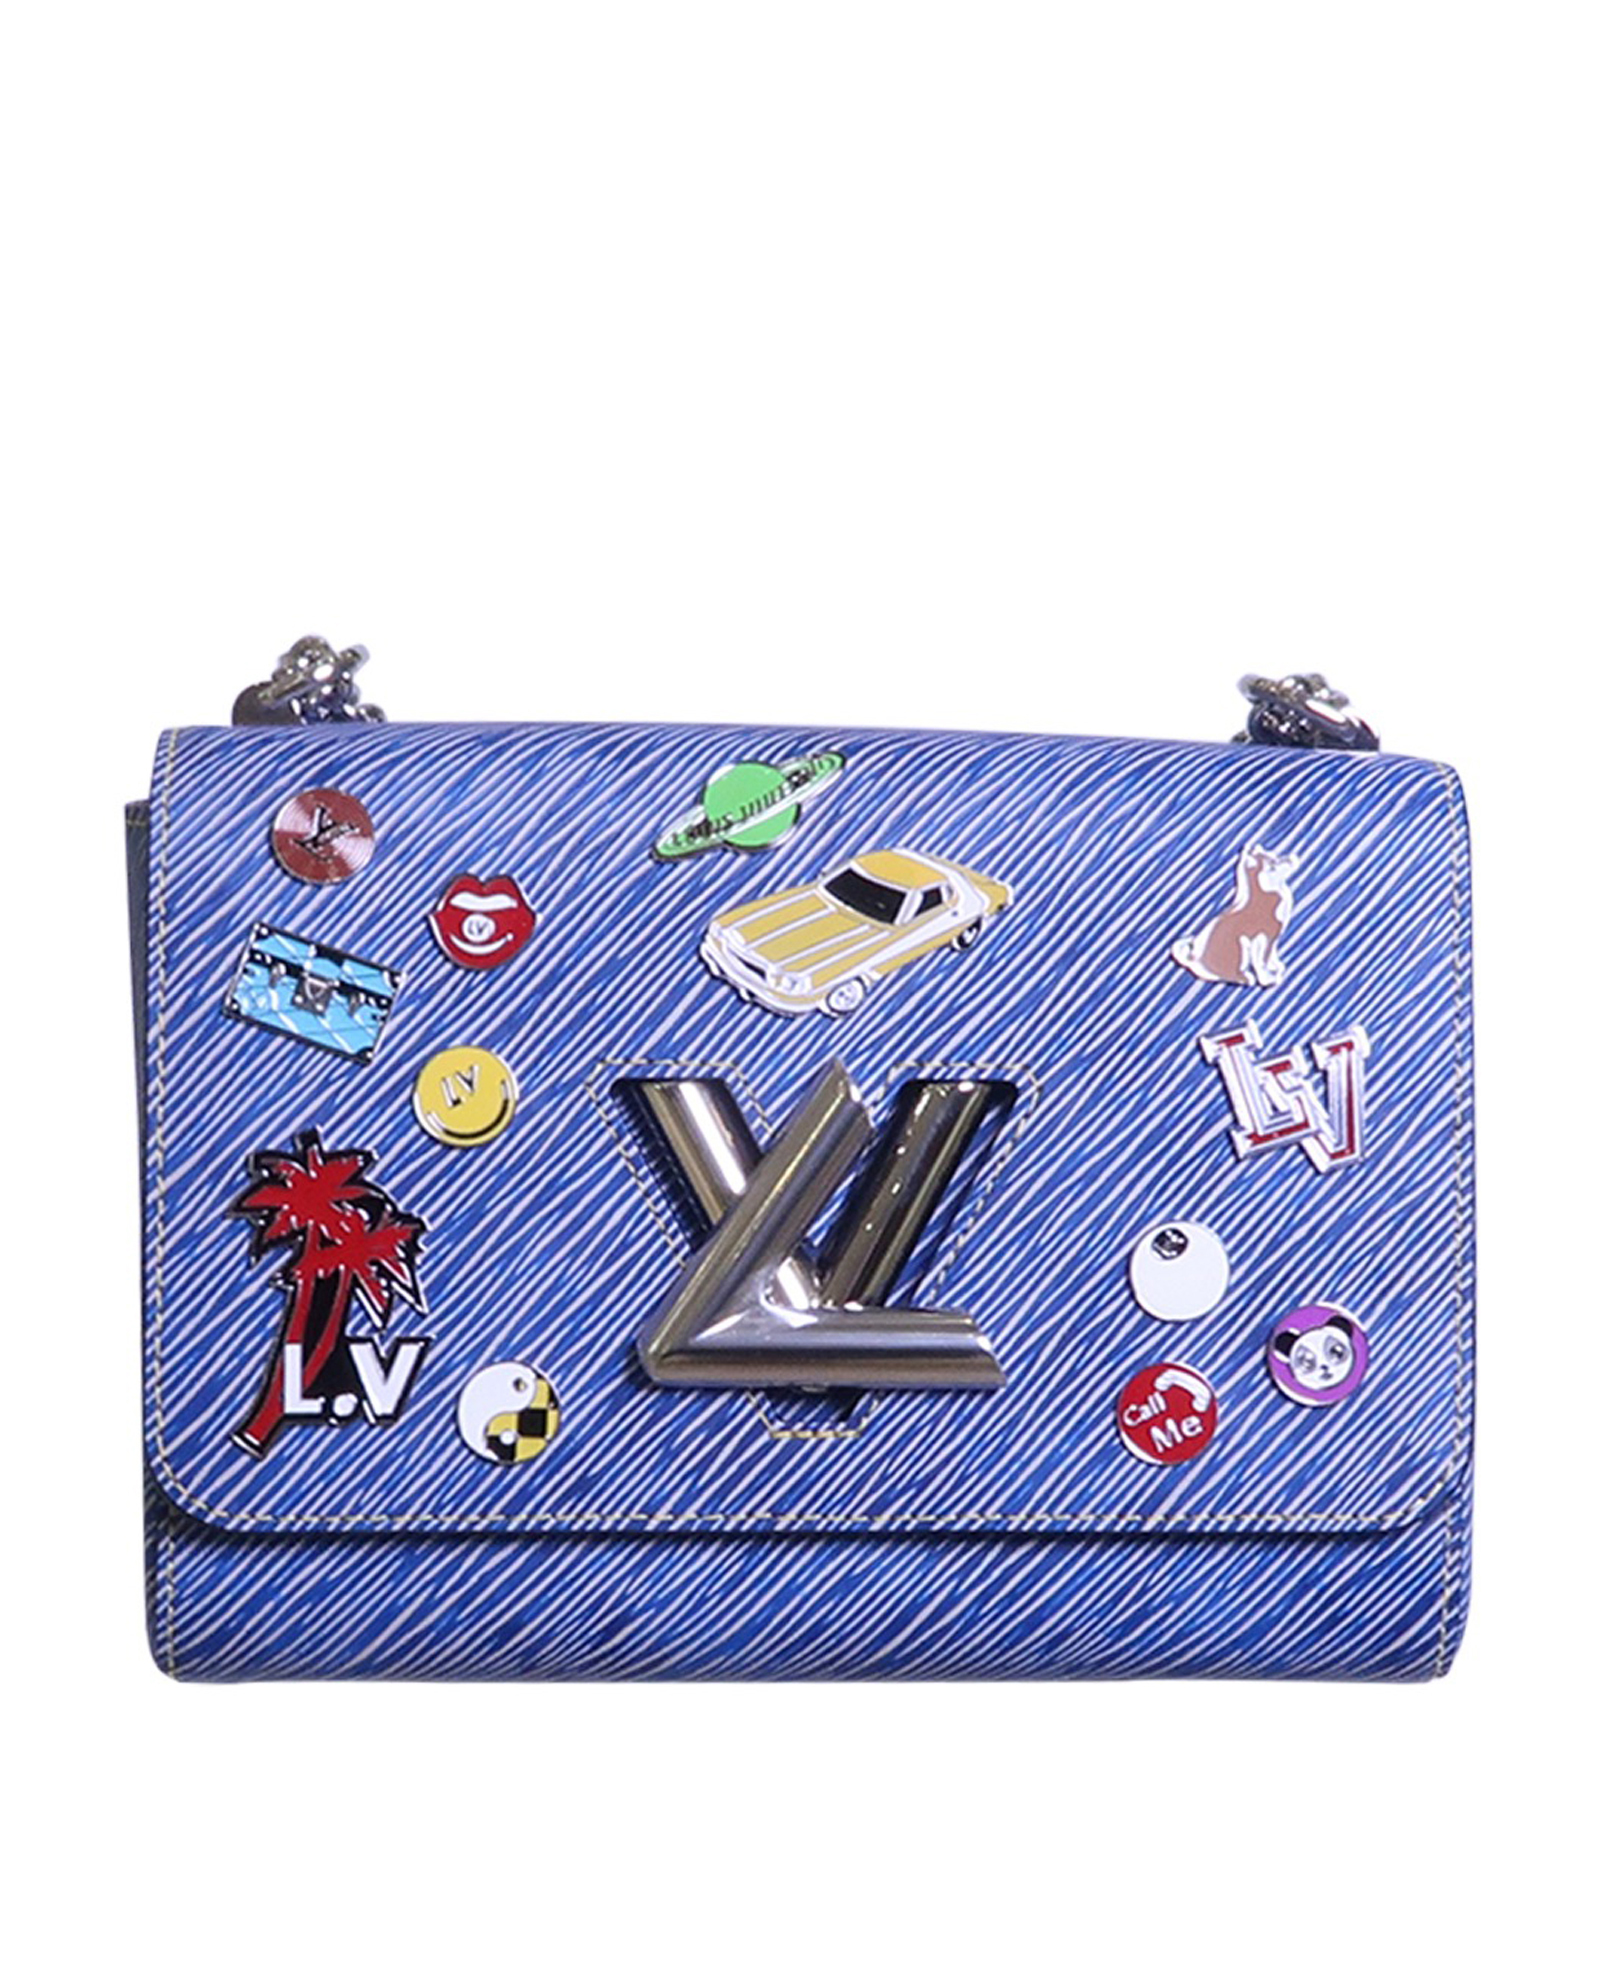 Pin on Designer Handbags